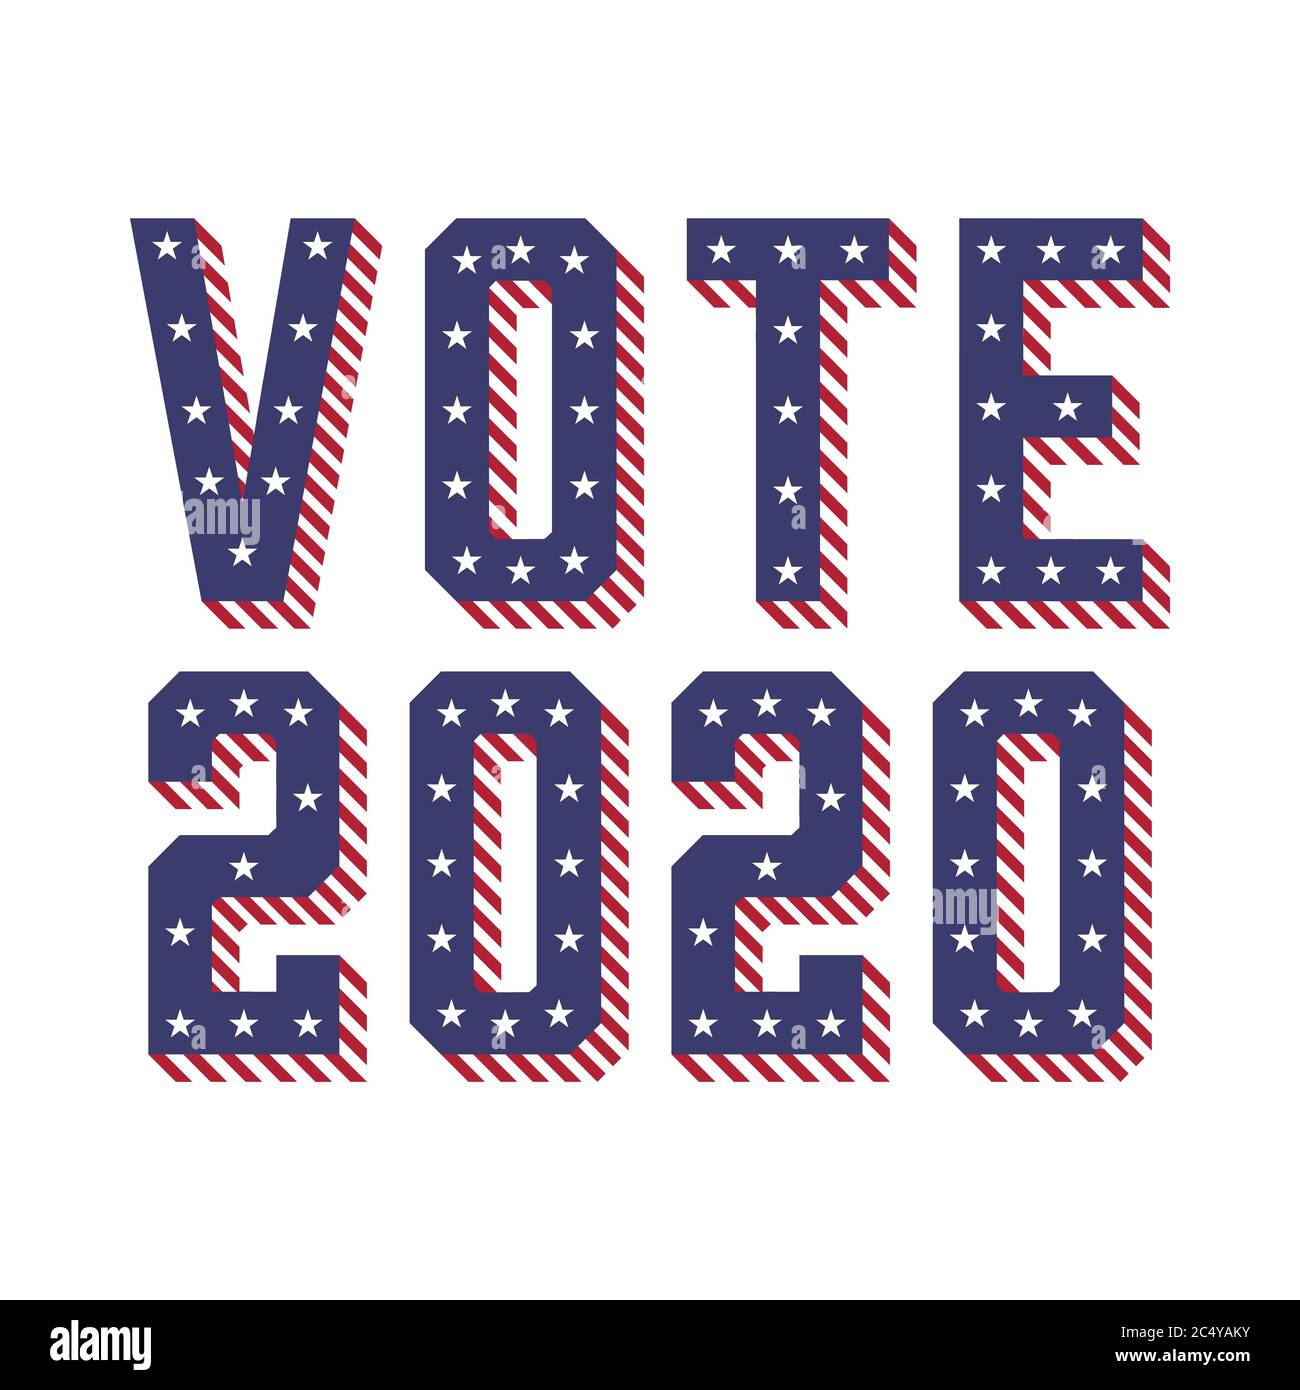 Le elezioni degli Stati Uniti d'America (USA) VOTANO 2020 con l'illustrazione vettoriale del concetto di stelle e strisce Illustrazione Vettoriale